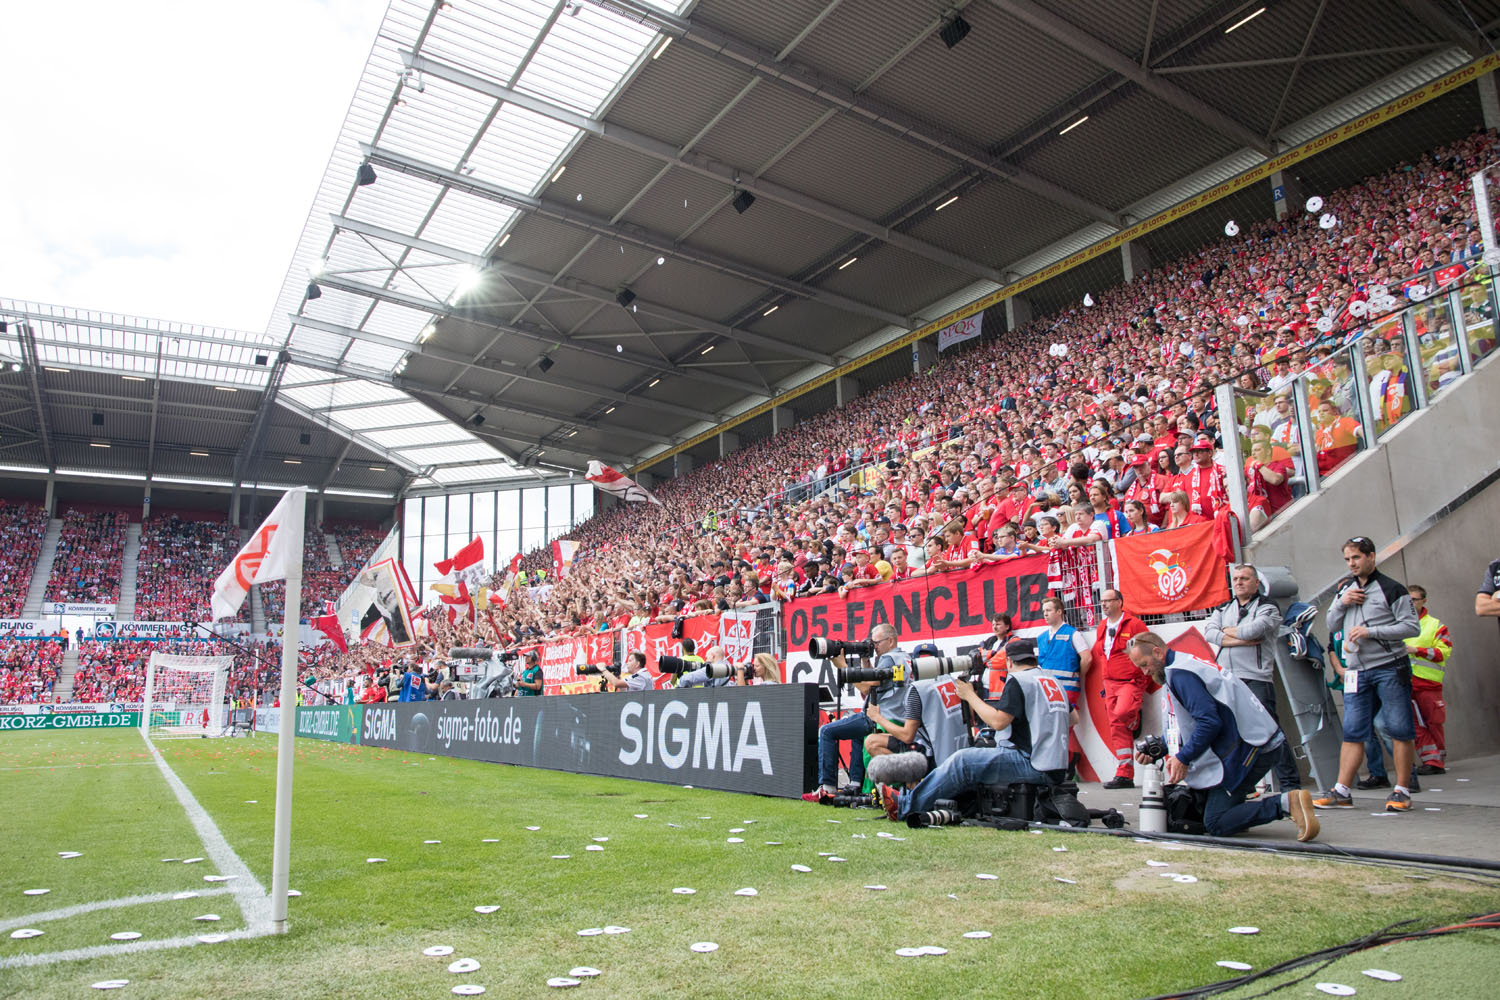 SIGMA Bandenwerbung während des Spiel gegen Hannover 96